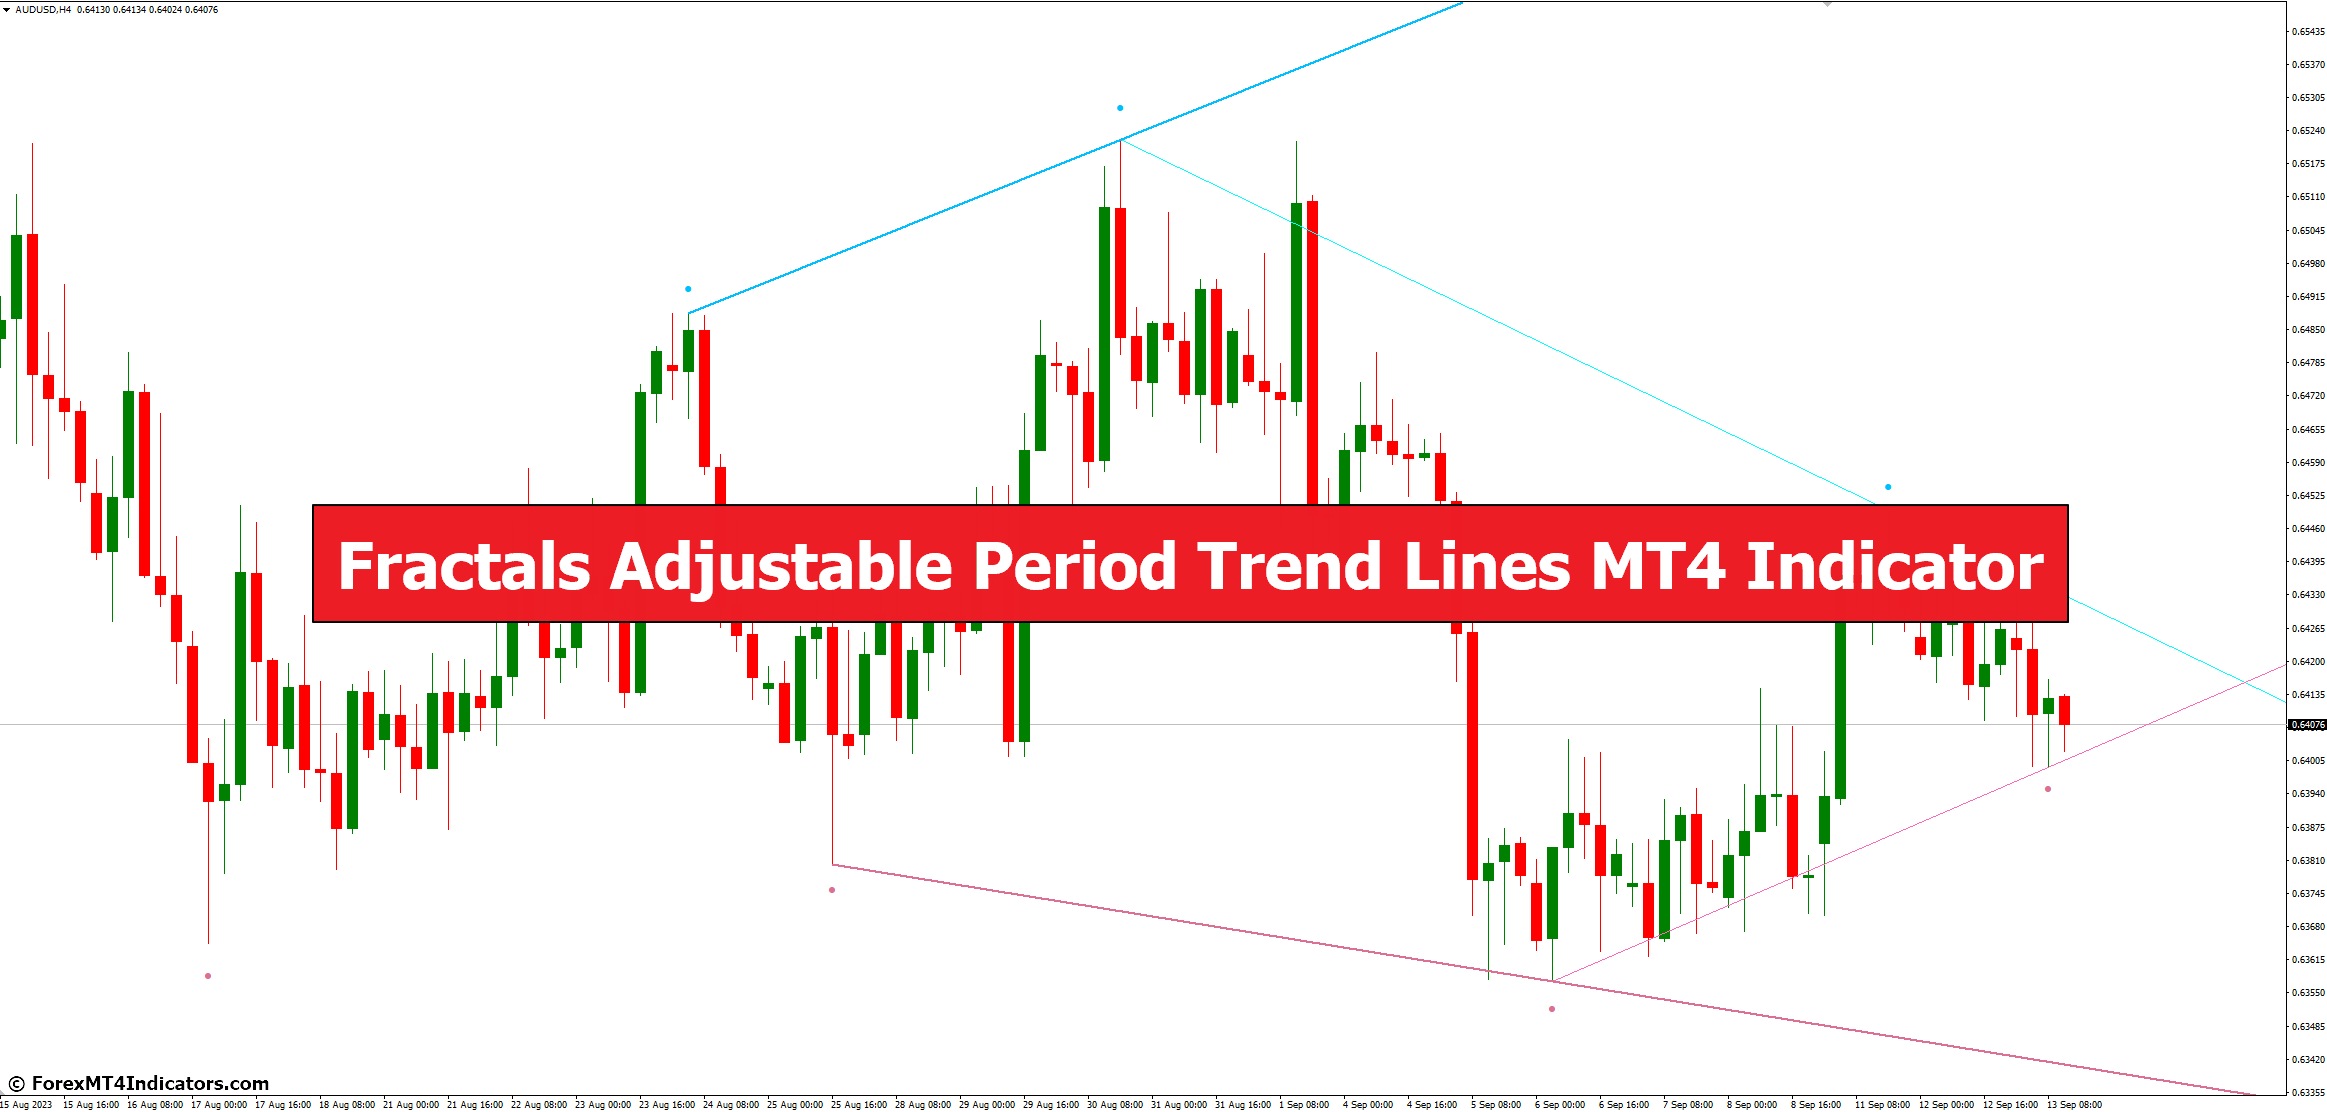 Fractals Adjustable Period Trend Lines MT4 Indicator - ForexMT4Indicators.com